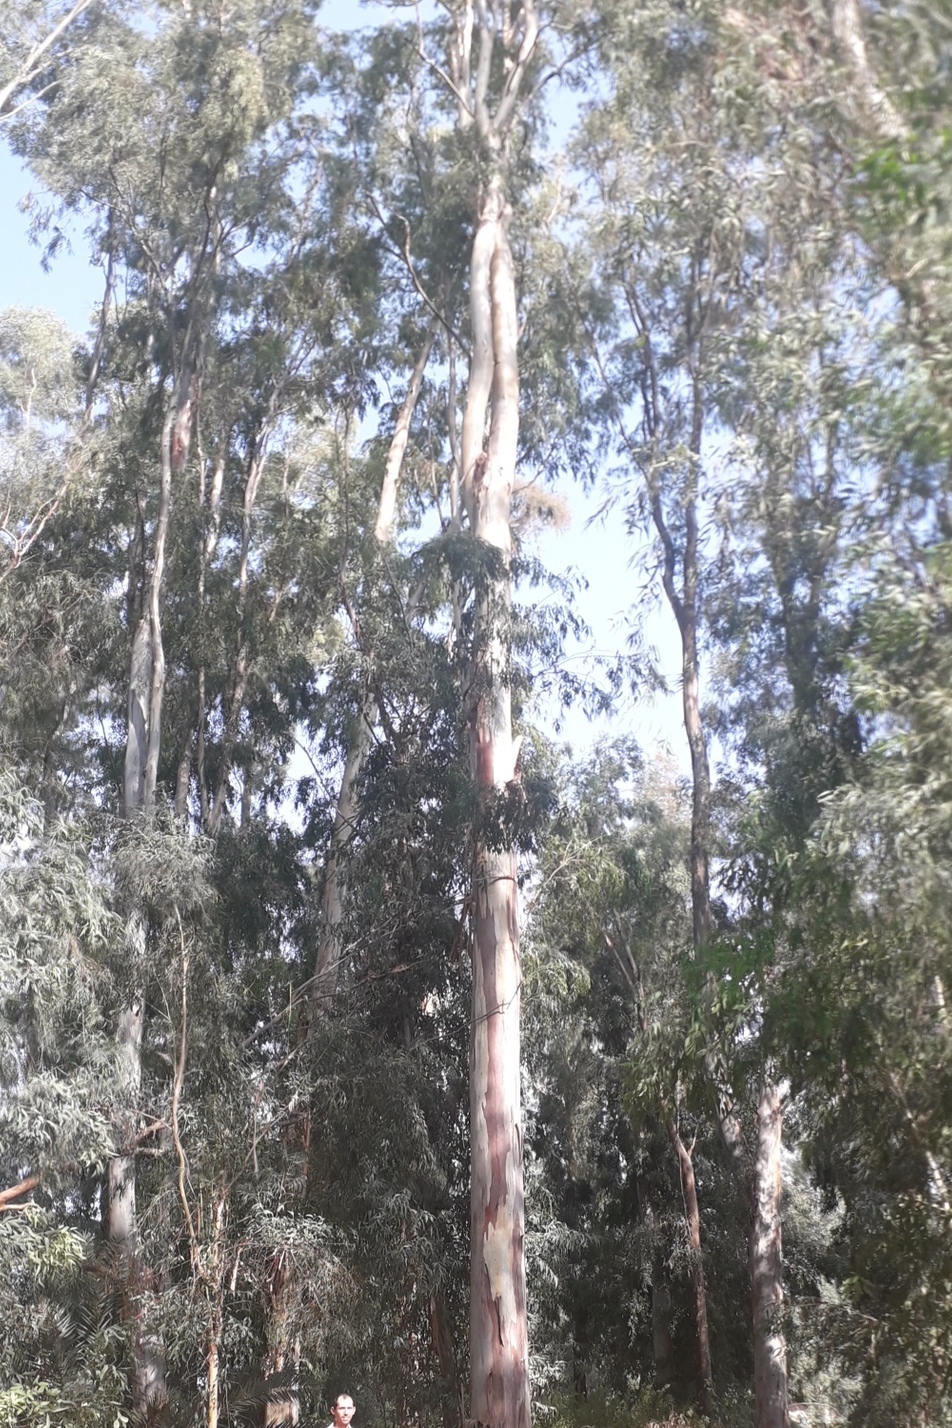 Israel's tallest trees